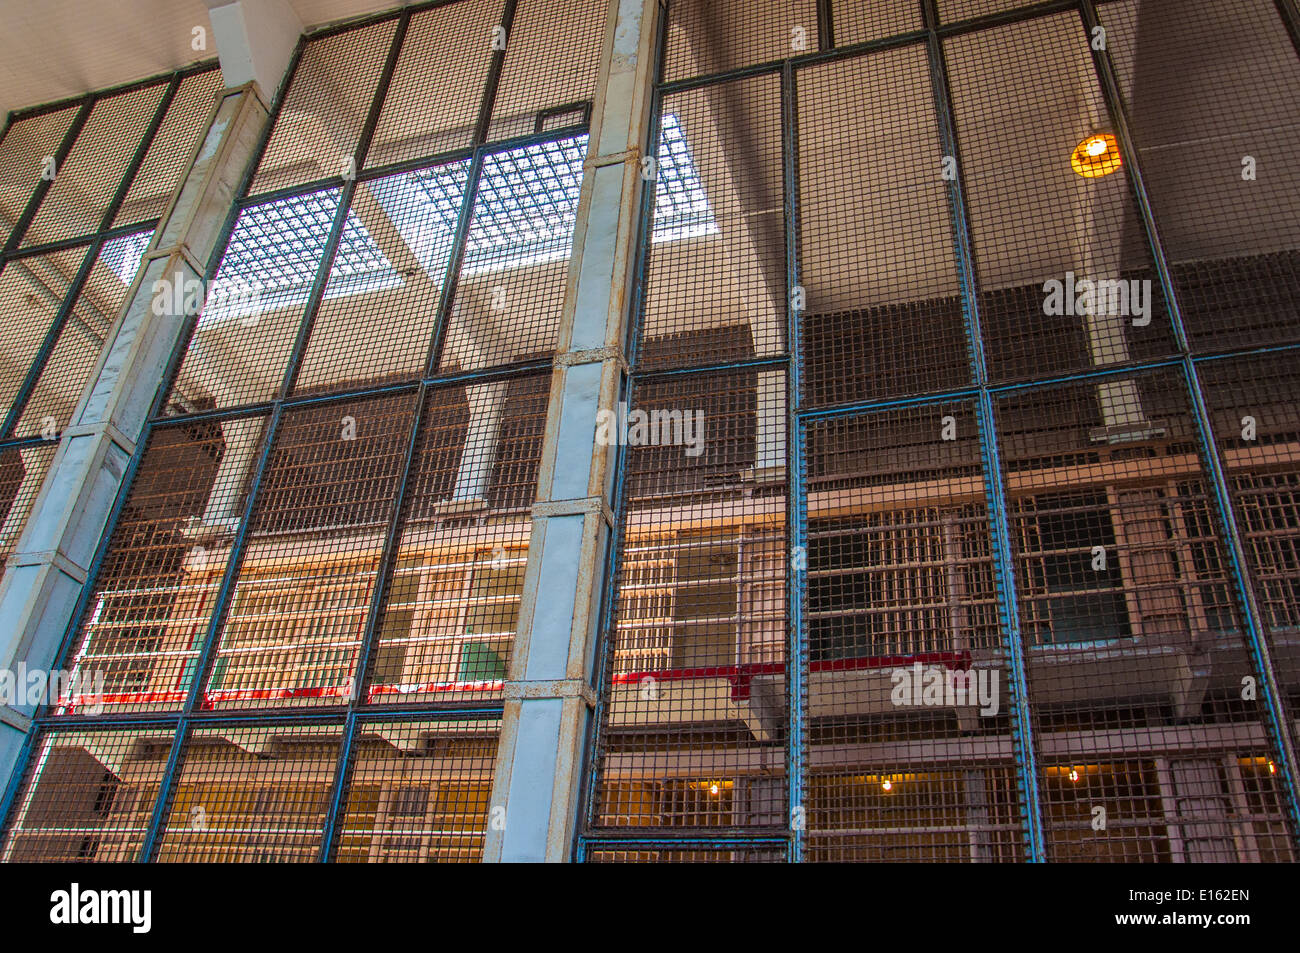 Cellgroup vistos a través de una valla de seguridad en la prisión de alcatraz Foto de stock